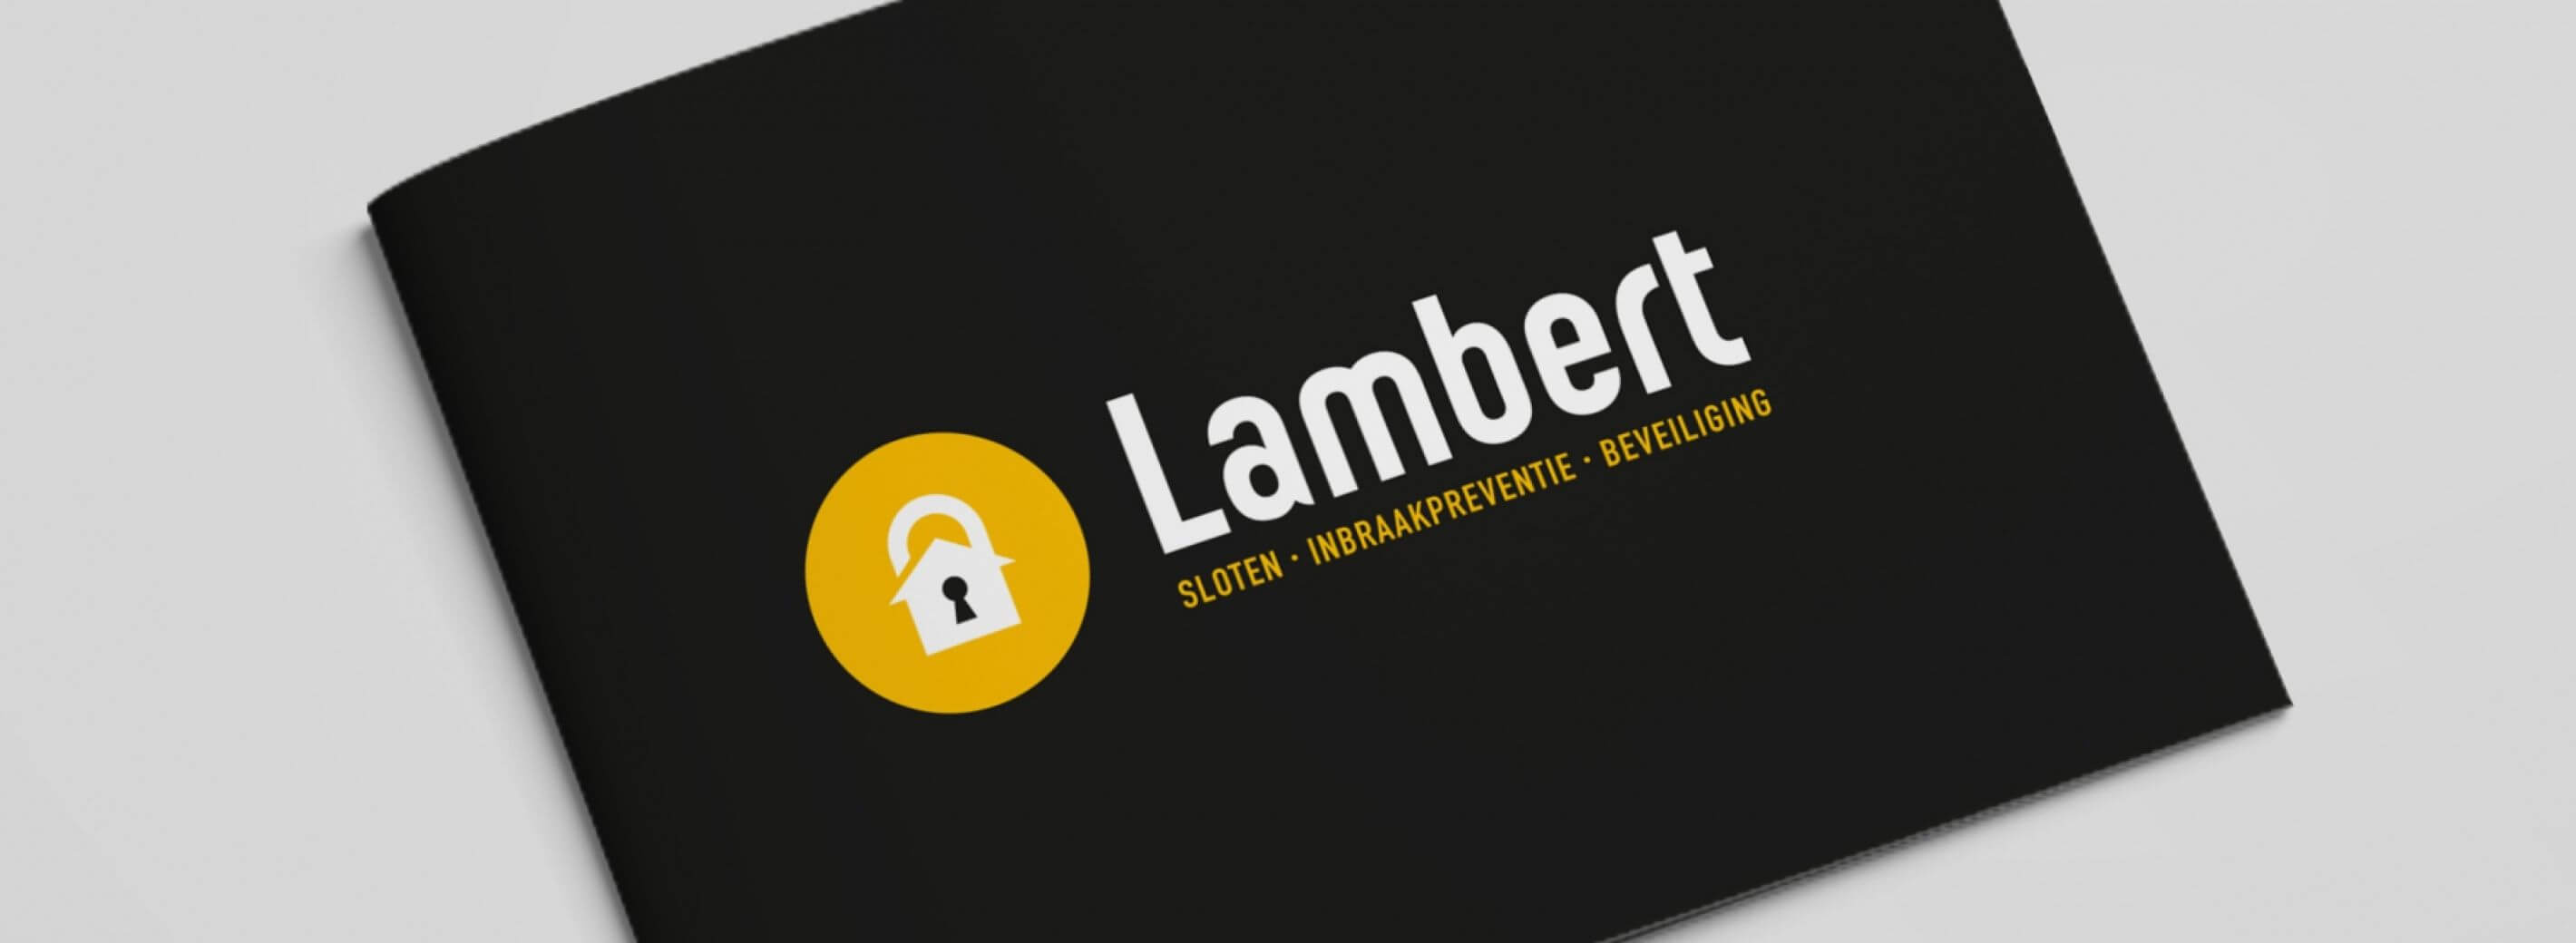 Logo sleutelservice Lambert